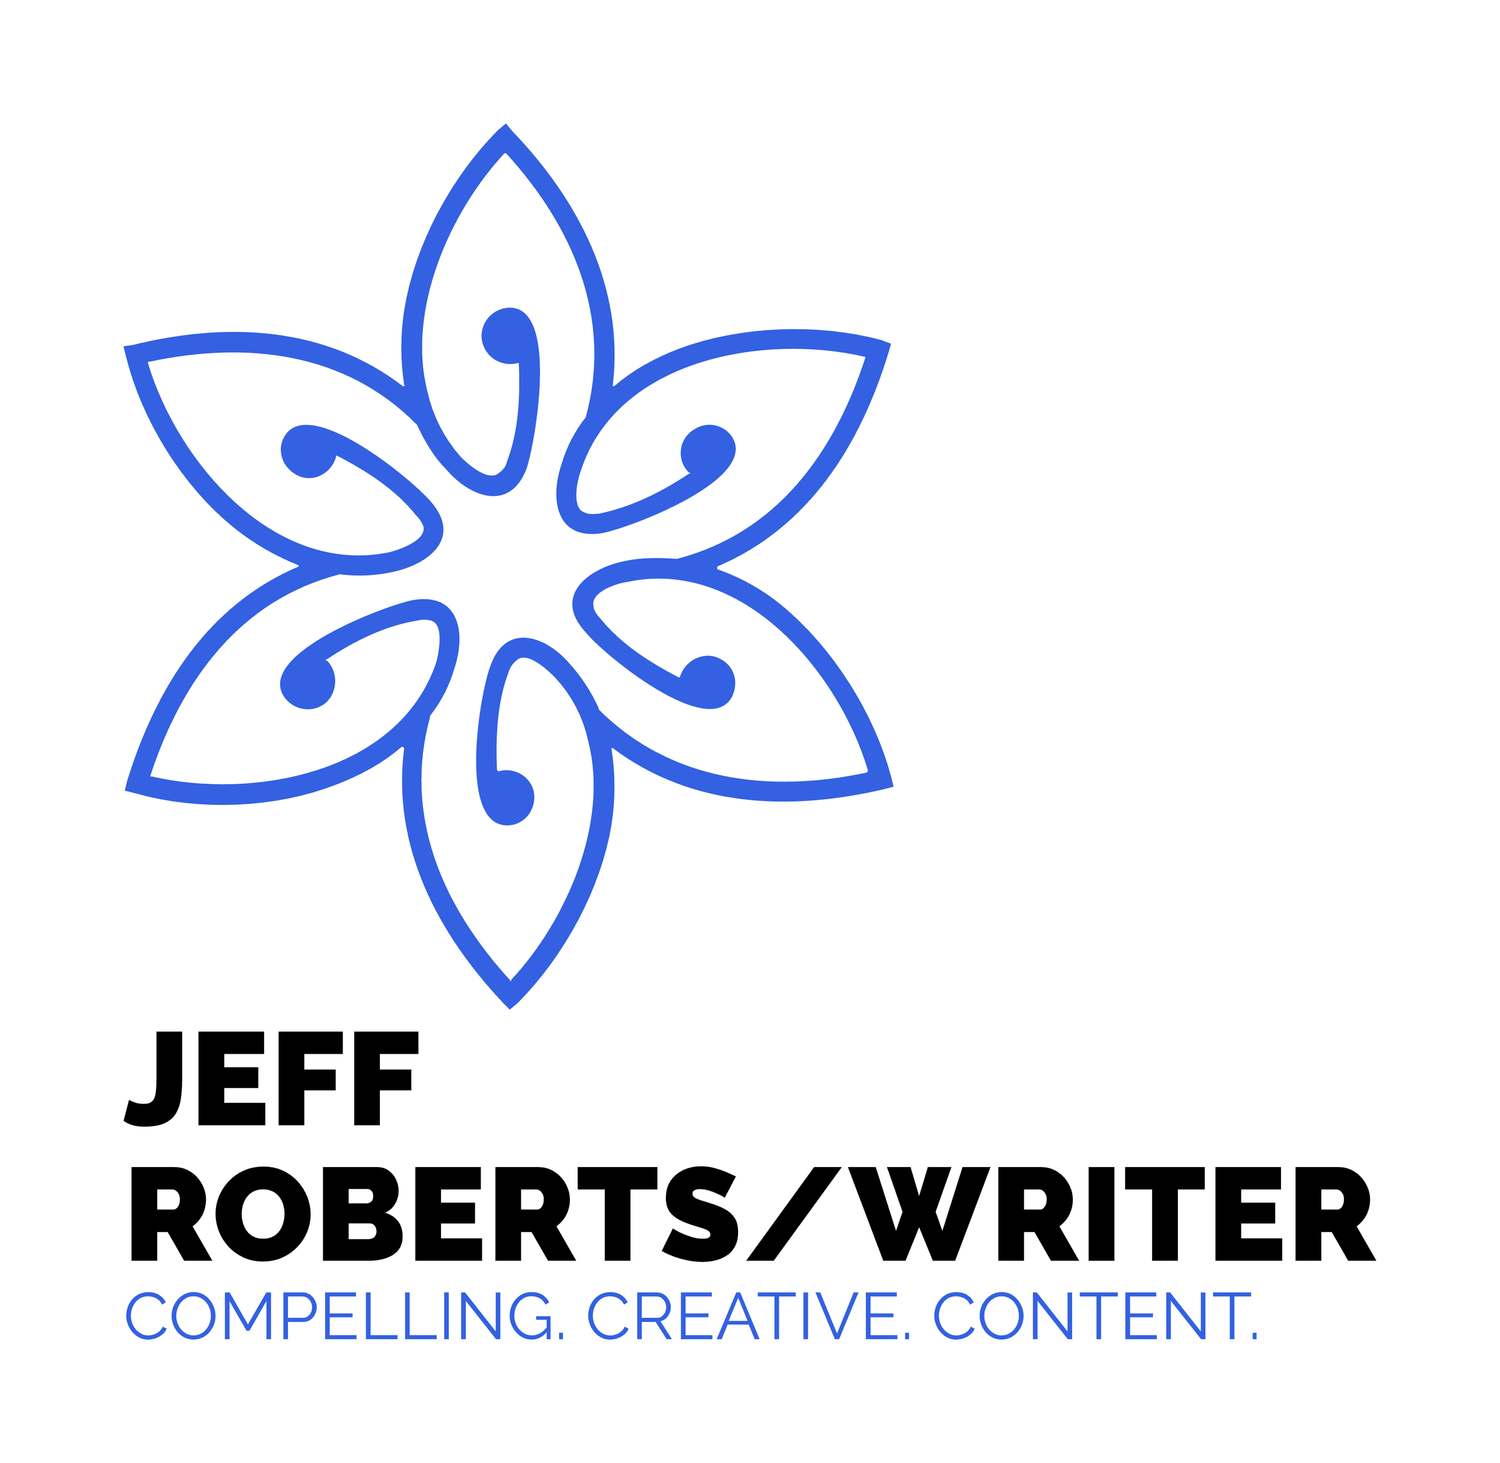 Jeff Roberts/Writer